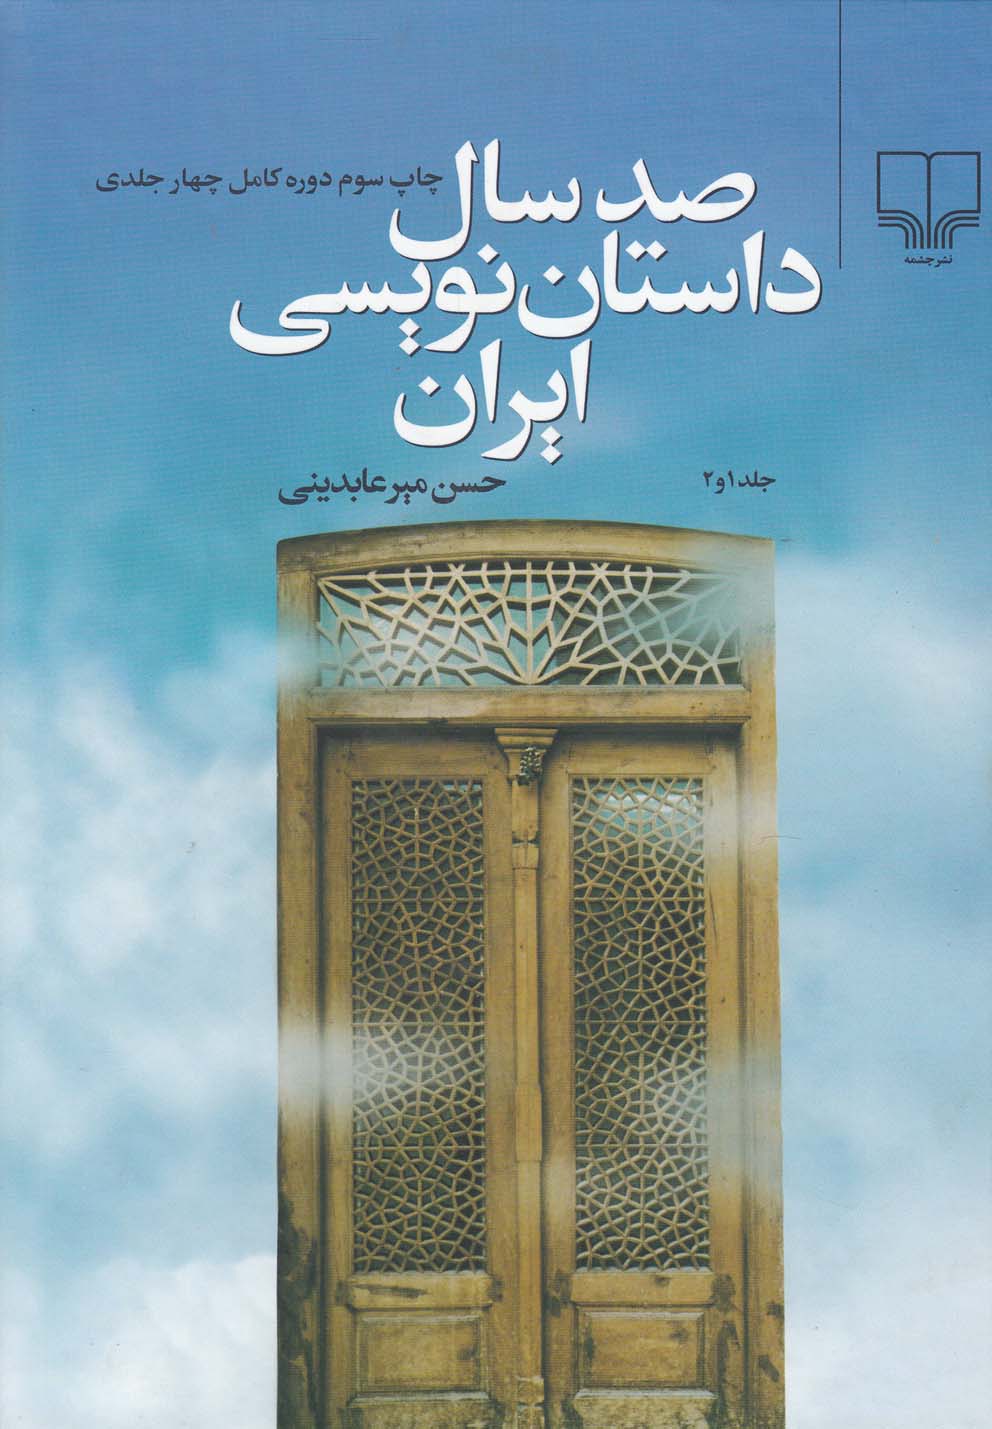 ۱۰۰ سال داستان نویسی ایران (۳و۴)